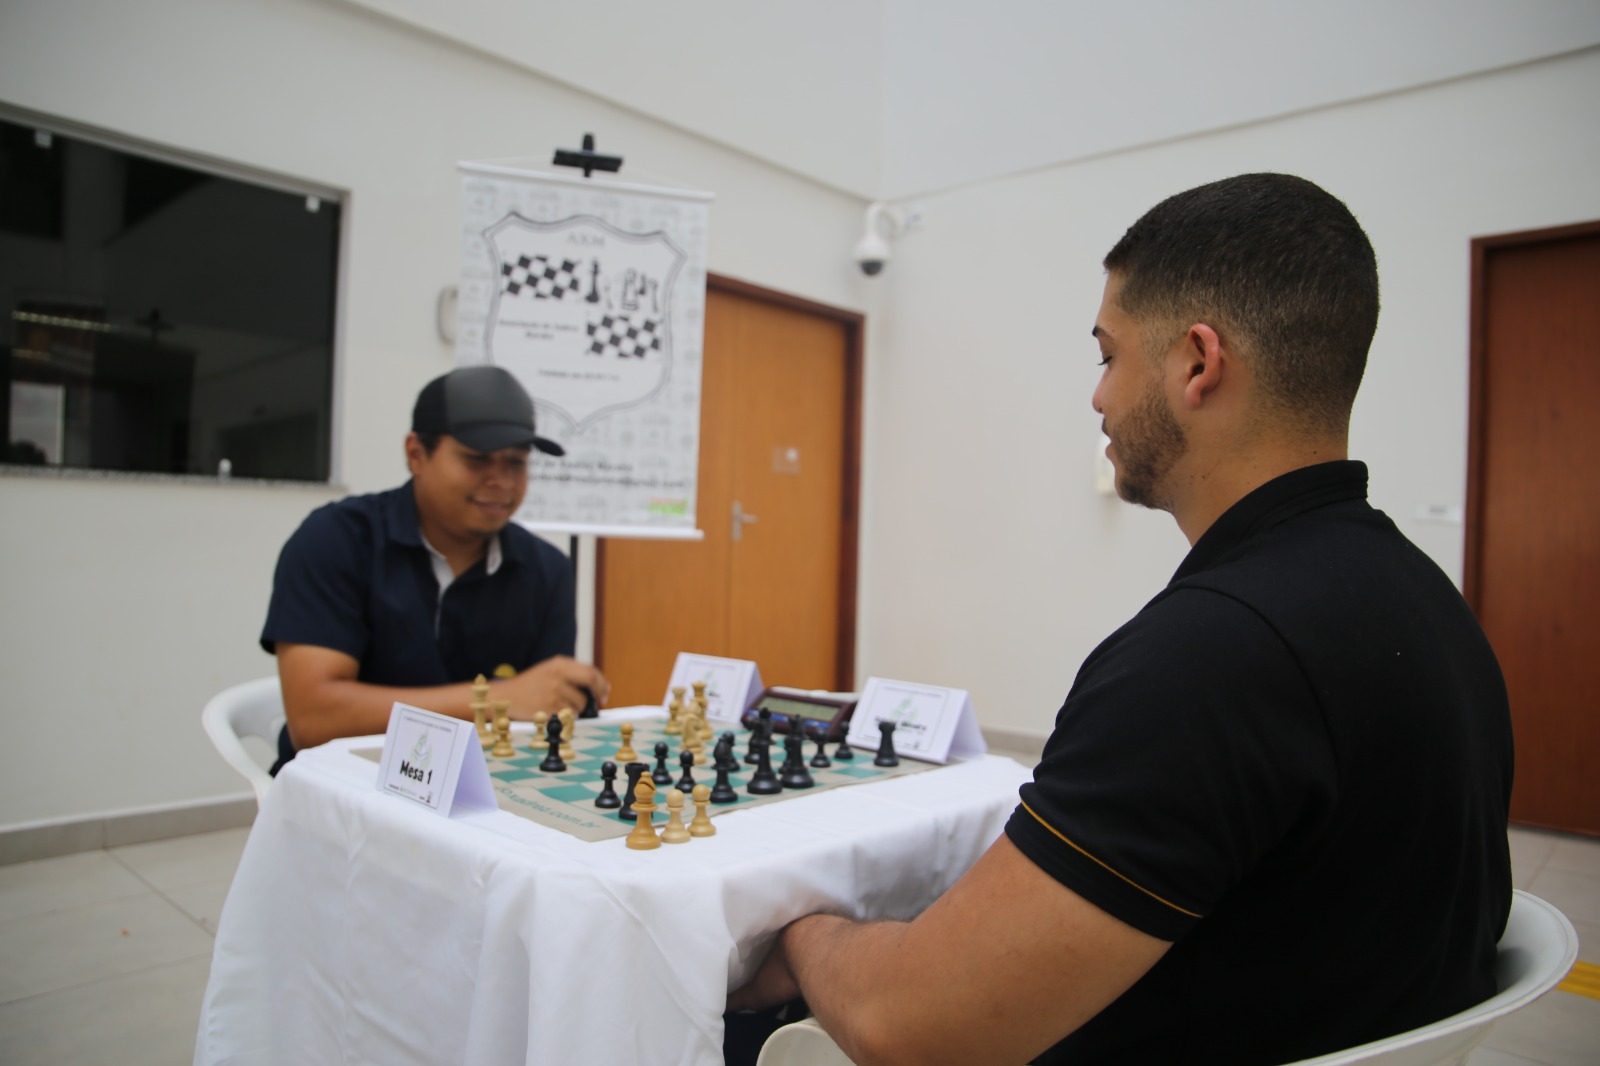 Campeonato de Xadrez: arte, esporte e raciocínio